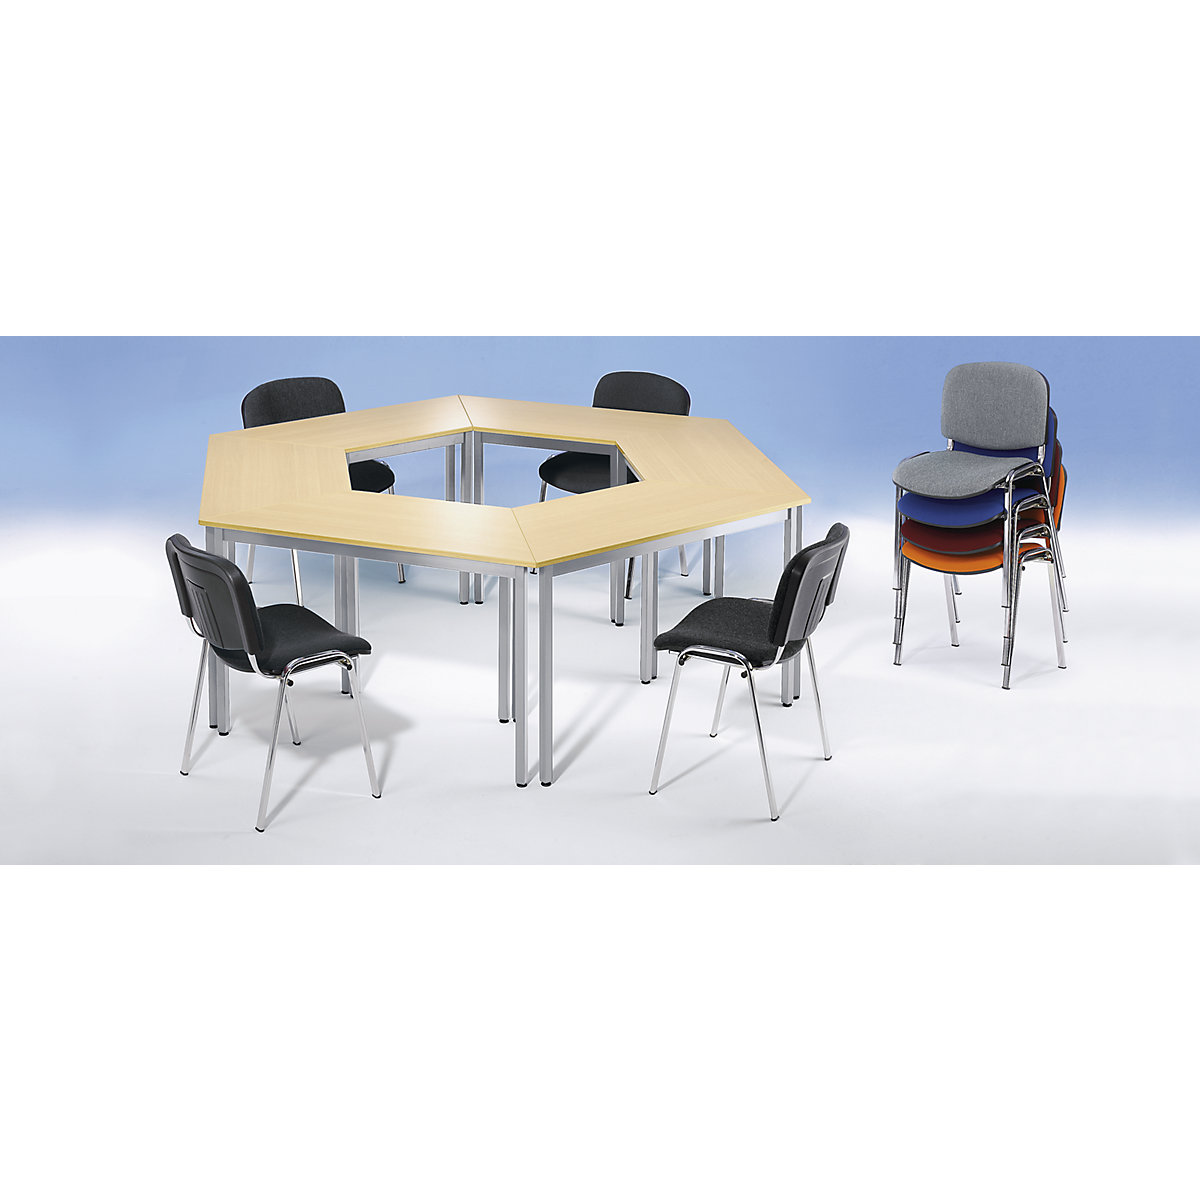 Višenamjenski stol – eurokraft basic, u obliku trapeza, VxŠxD 740 x 1400 x 700 mm, ploča u imitaciji javora, postolje u aluminij bijeloj boji-1